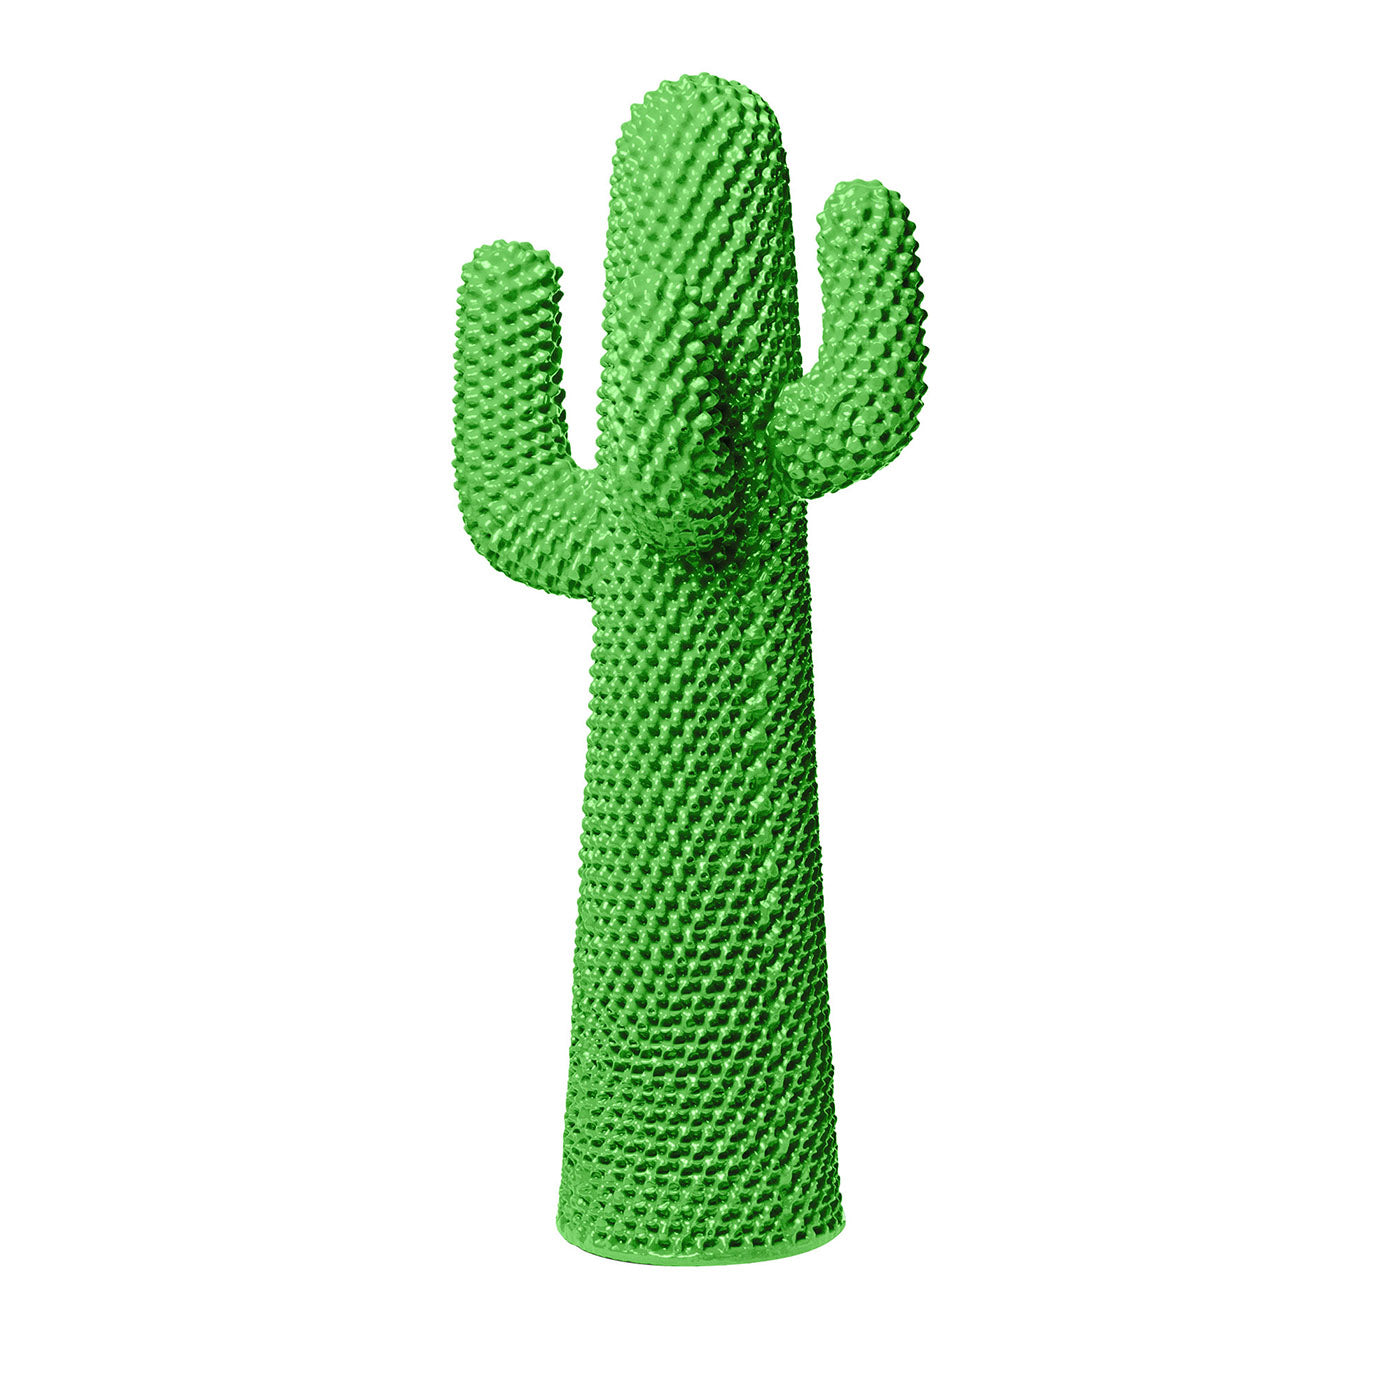 Otro perchero de cactus verde de Drocco/Mello - Vista principal